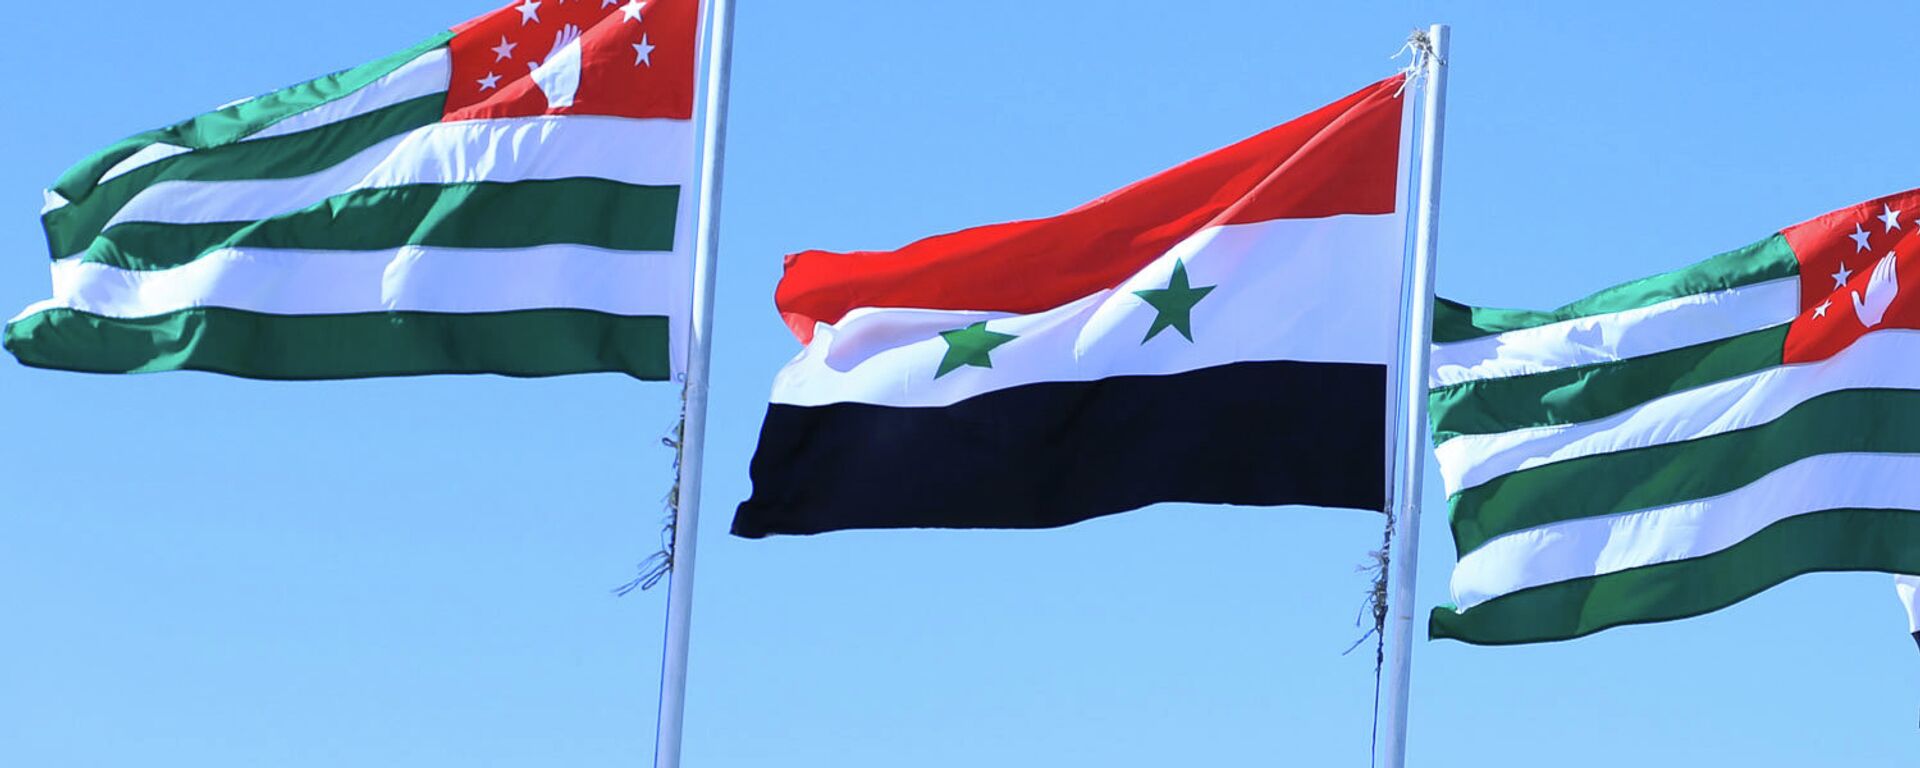 Флаги Сирии и Абхазии - Sputnik Аҧсны, 1920, 04.12.2018